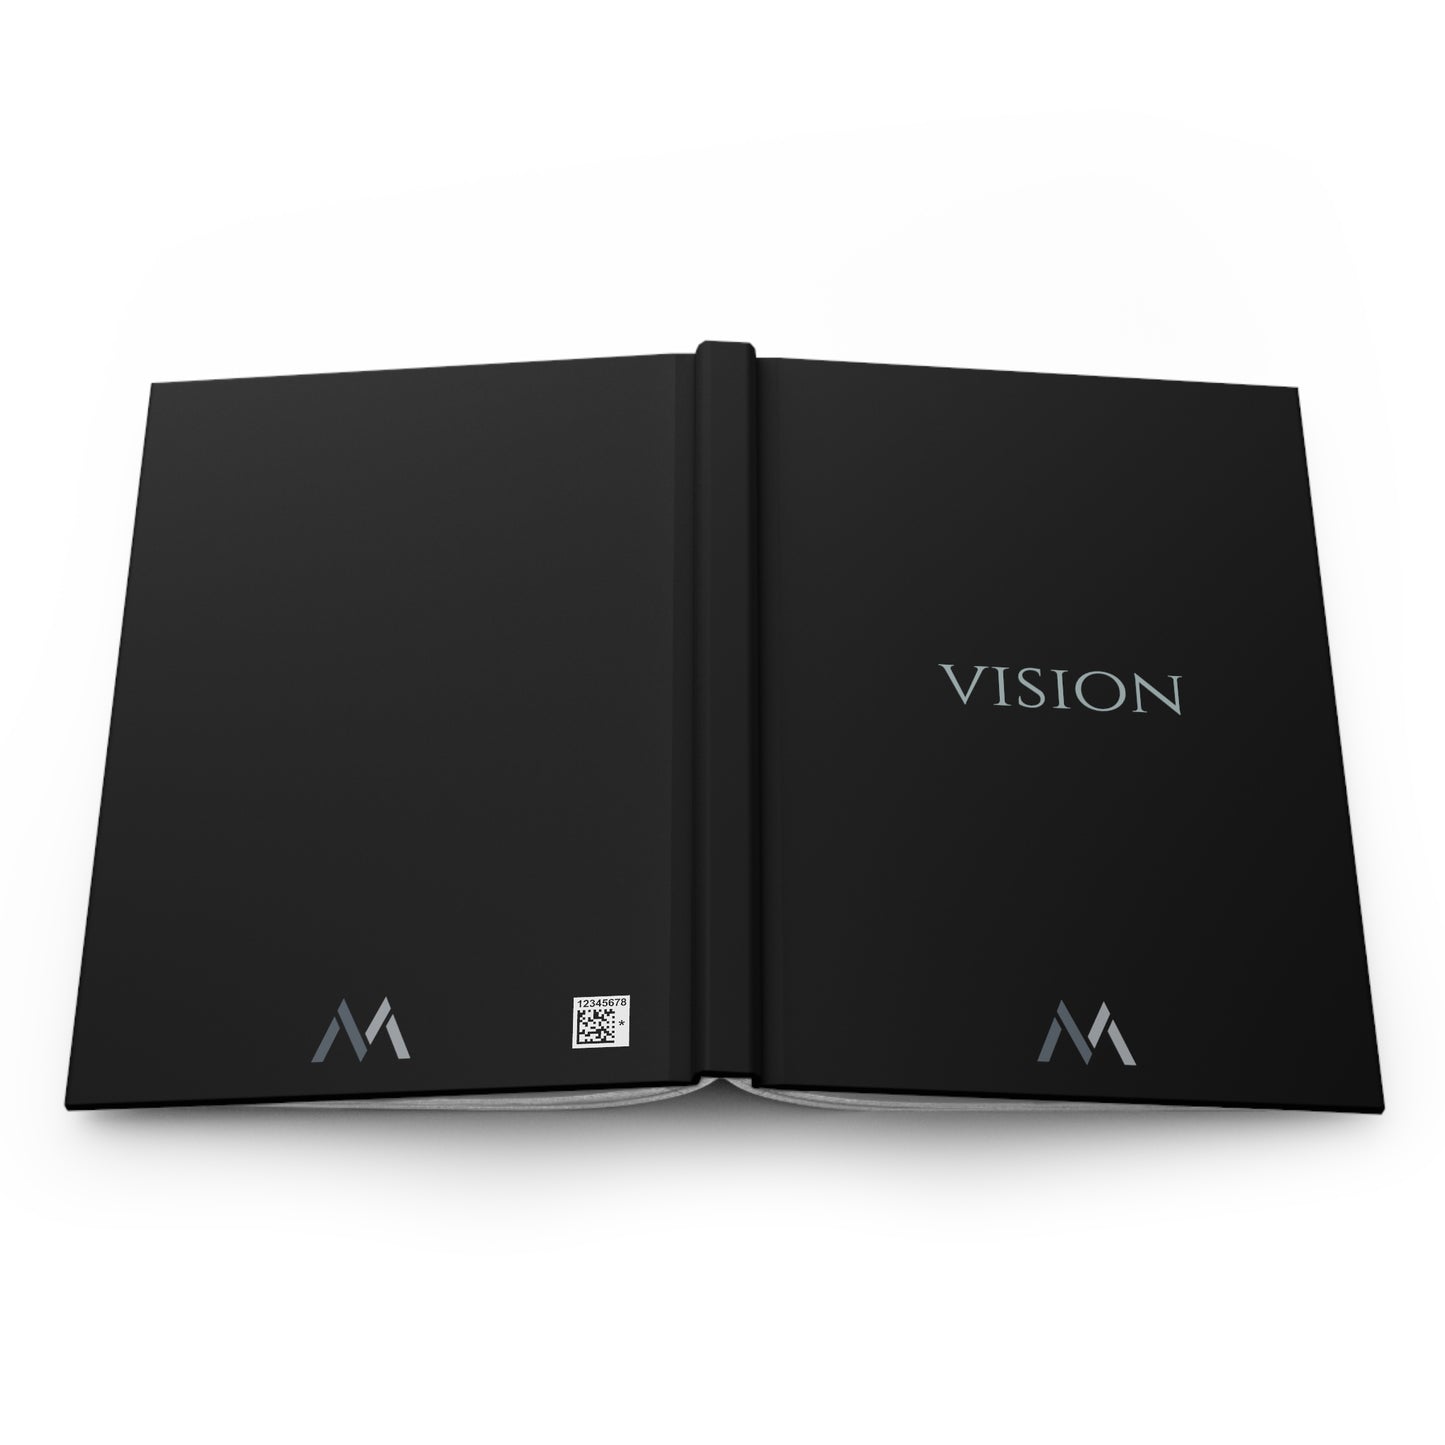 "VISION" Hard Cover Matte Black Journal